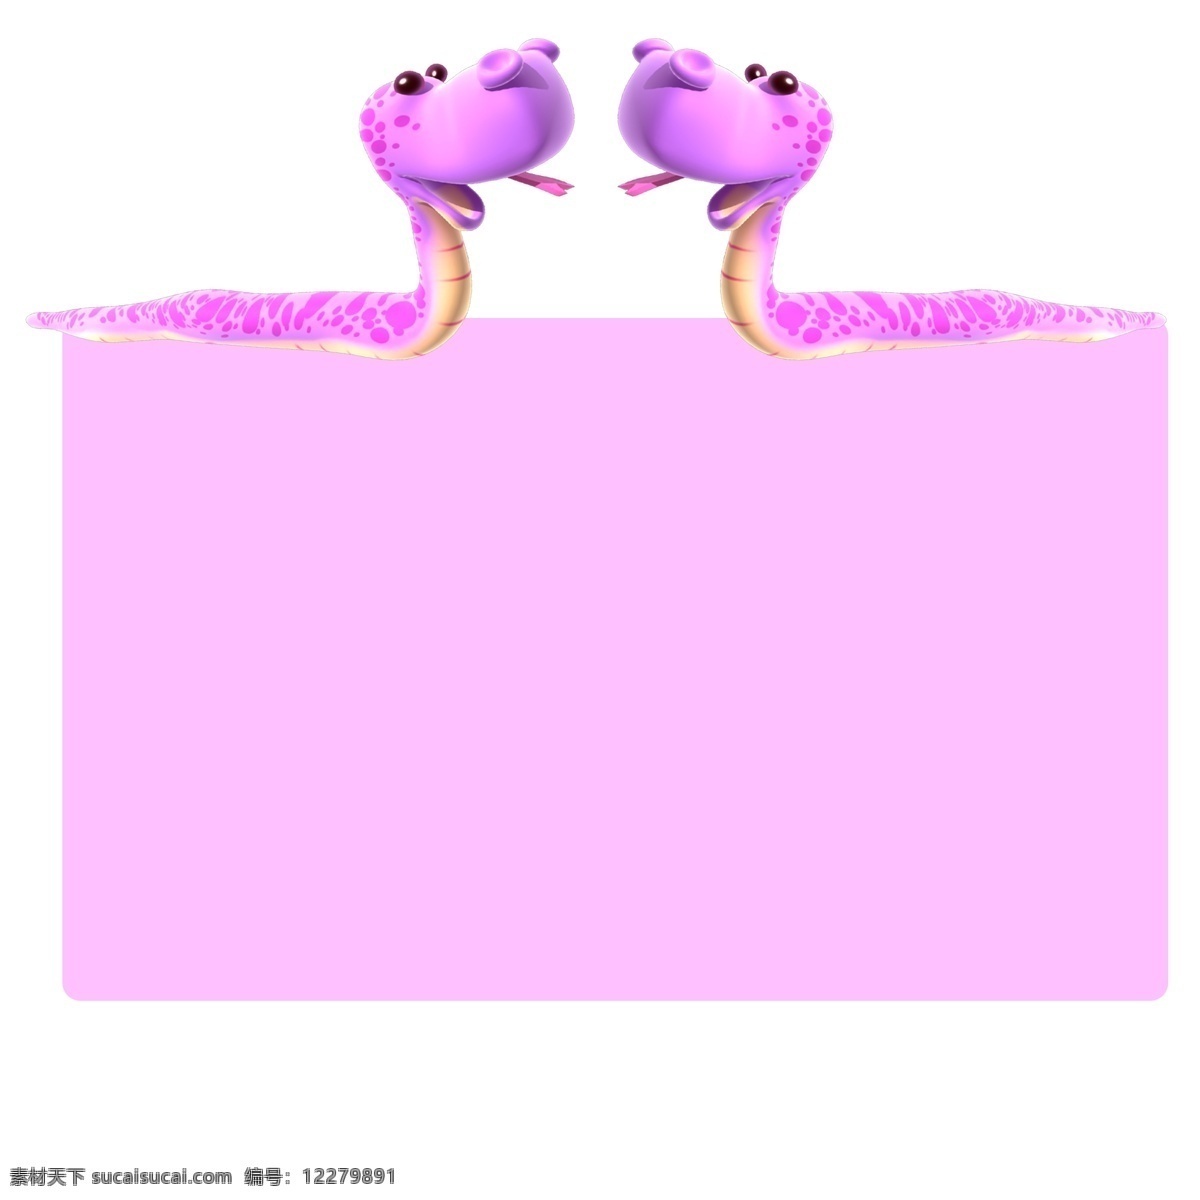 简约 美观 紫色 小 蛇 创意 边框 边框纹理 创意边框 紫色线条 紫色小蛇 创意设计